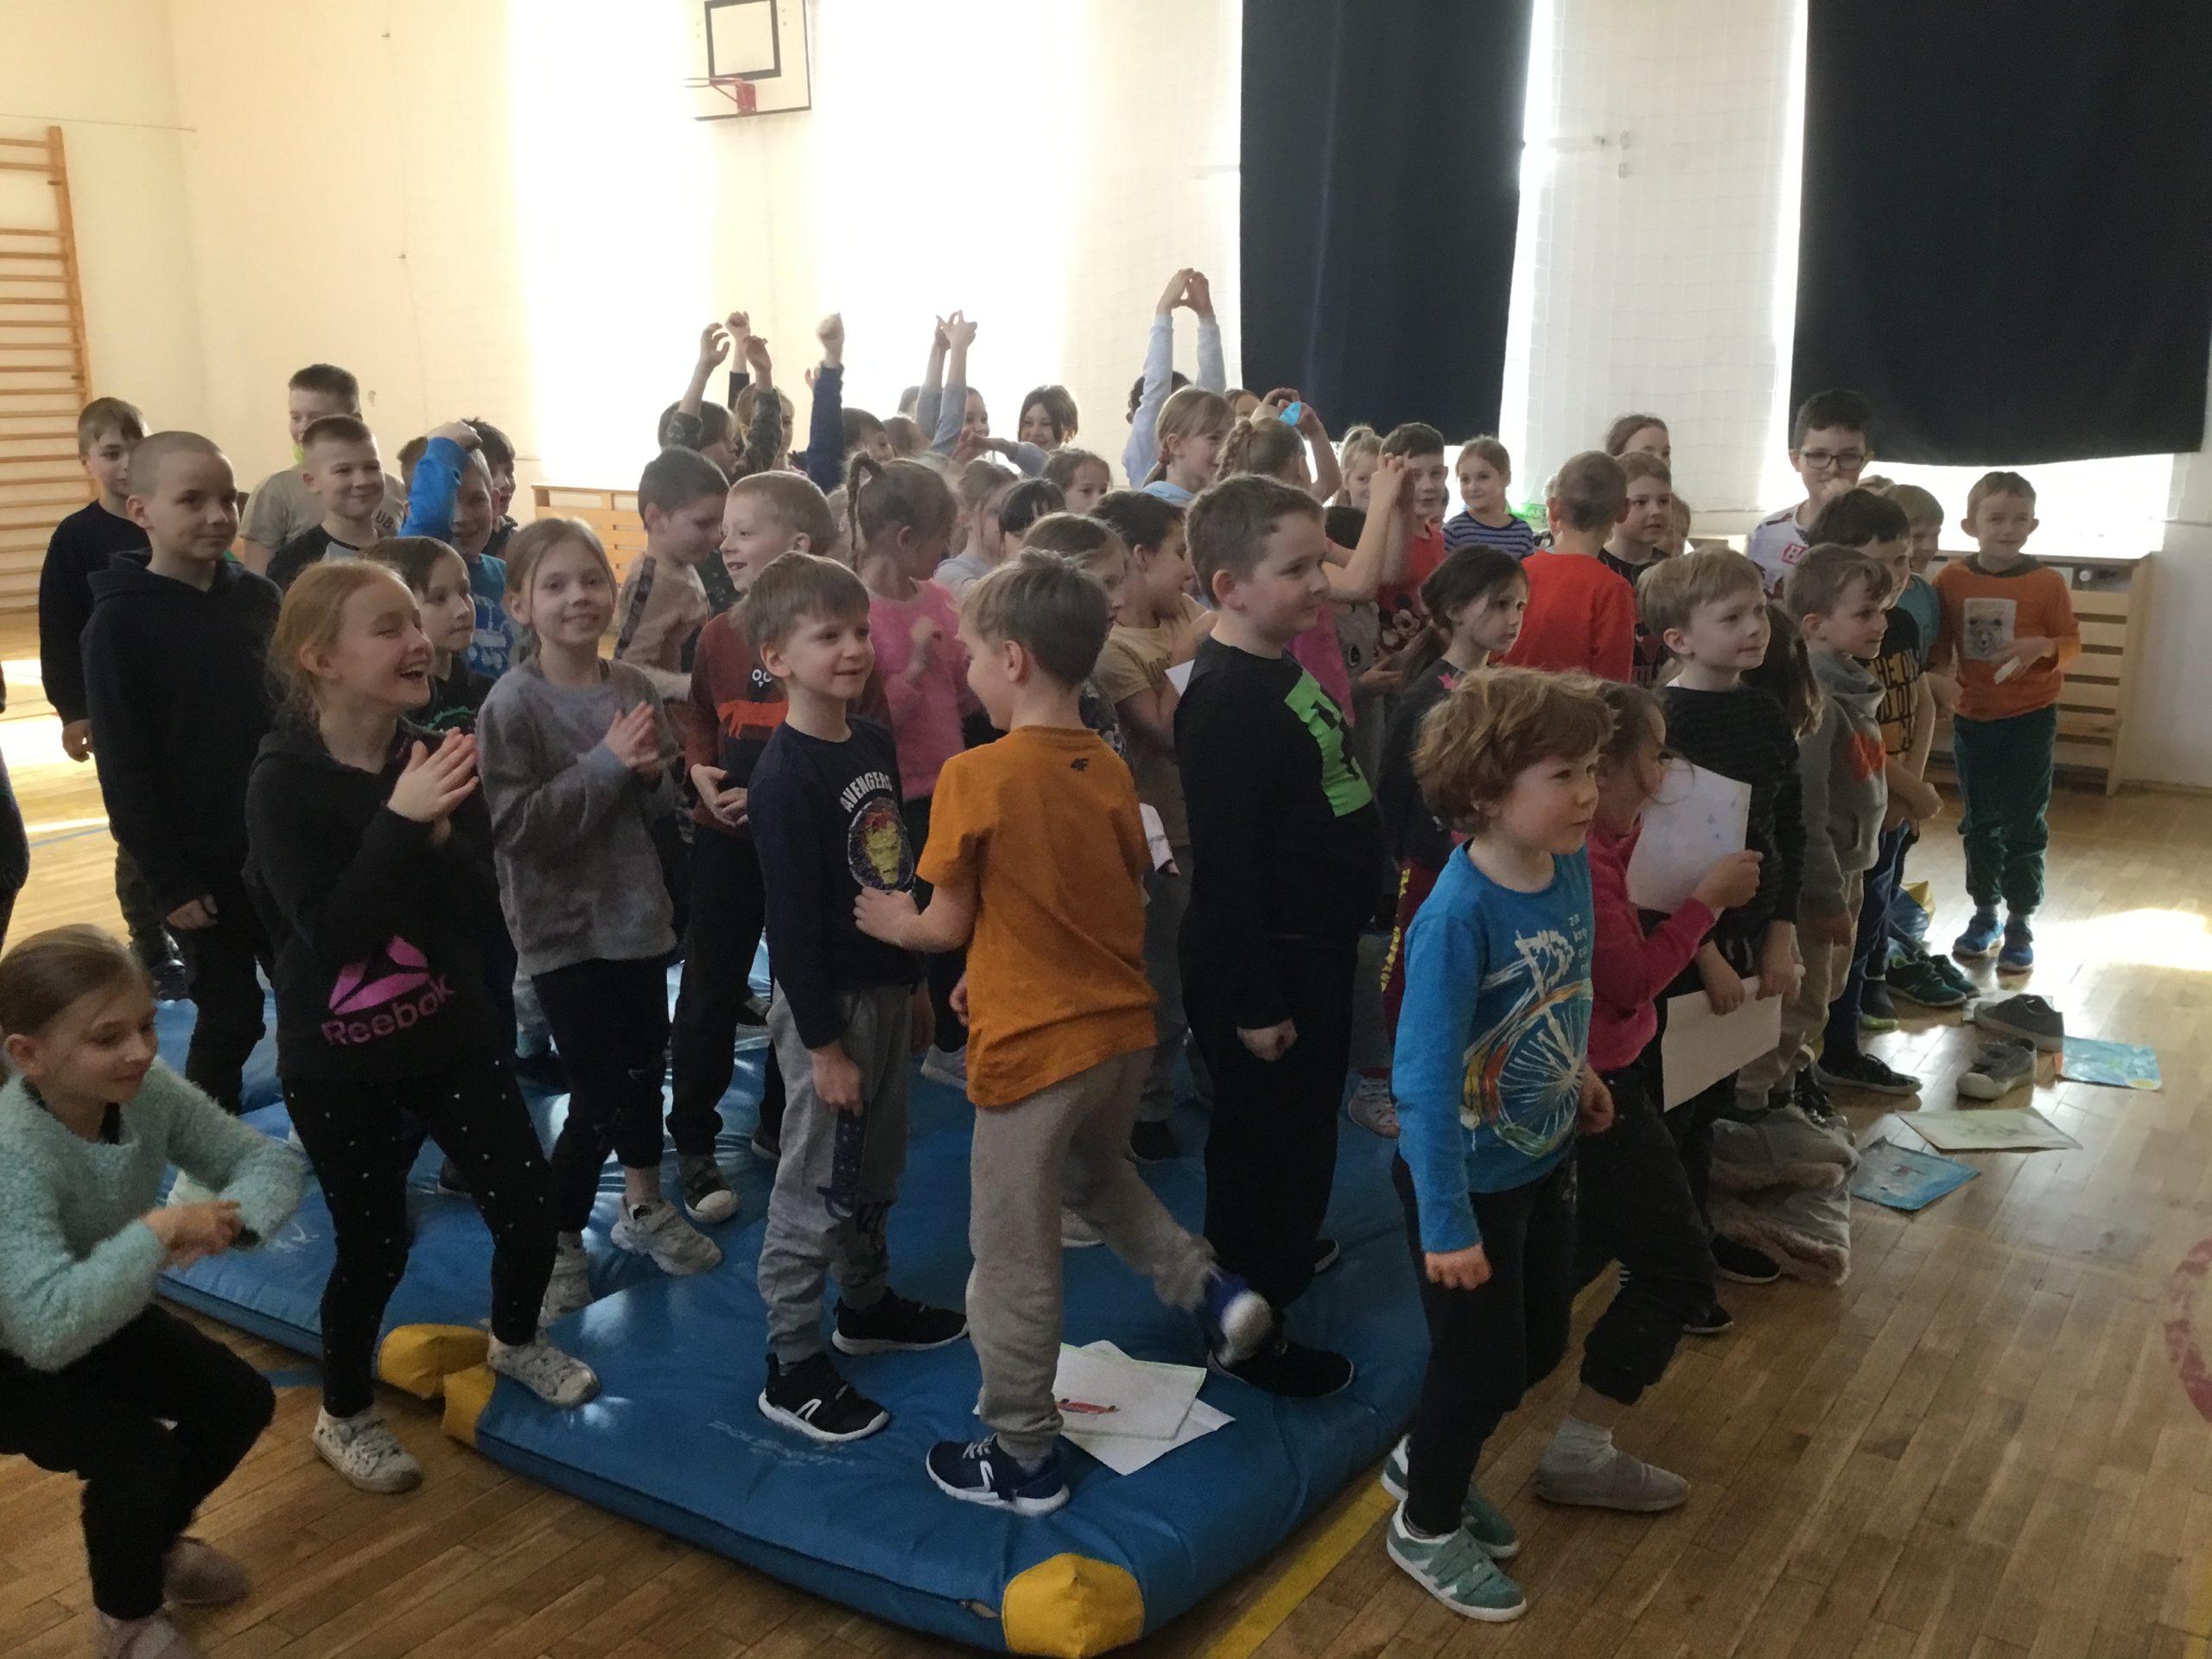 dzieci z klas młodszych na sali gimnastycznej podczas spotkania autorskiego zgłaszające się do odpowiedzi